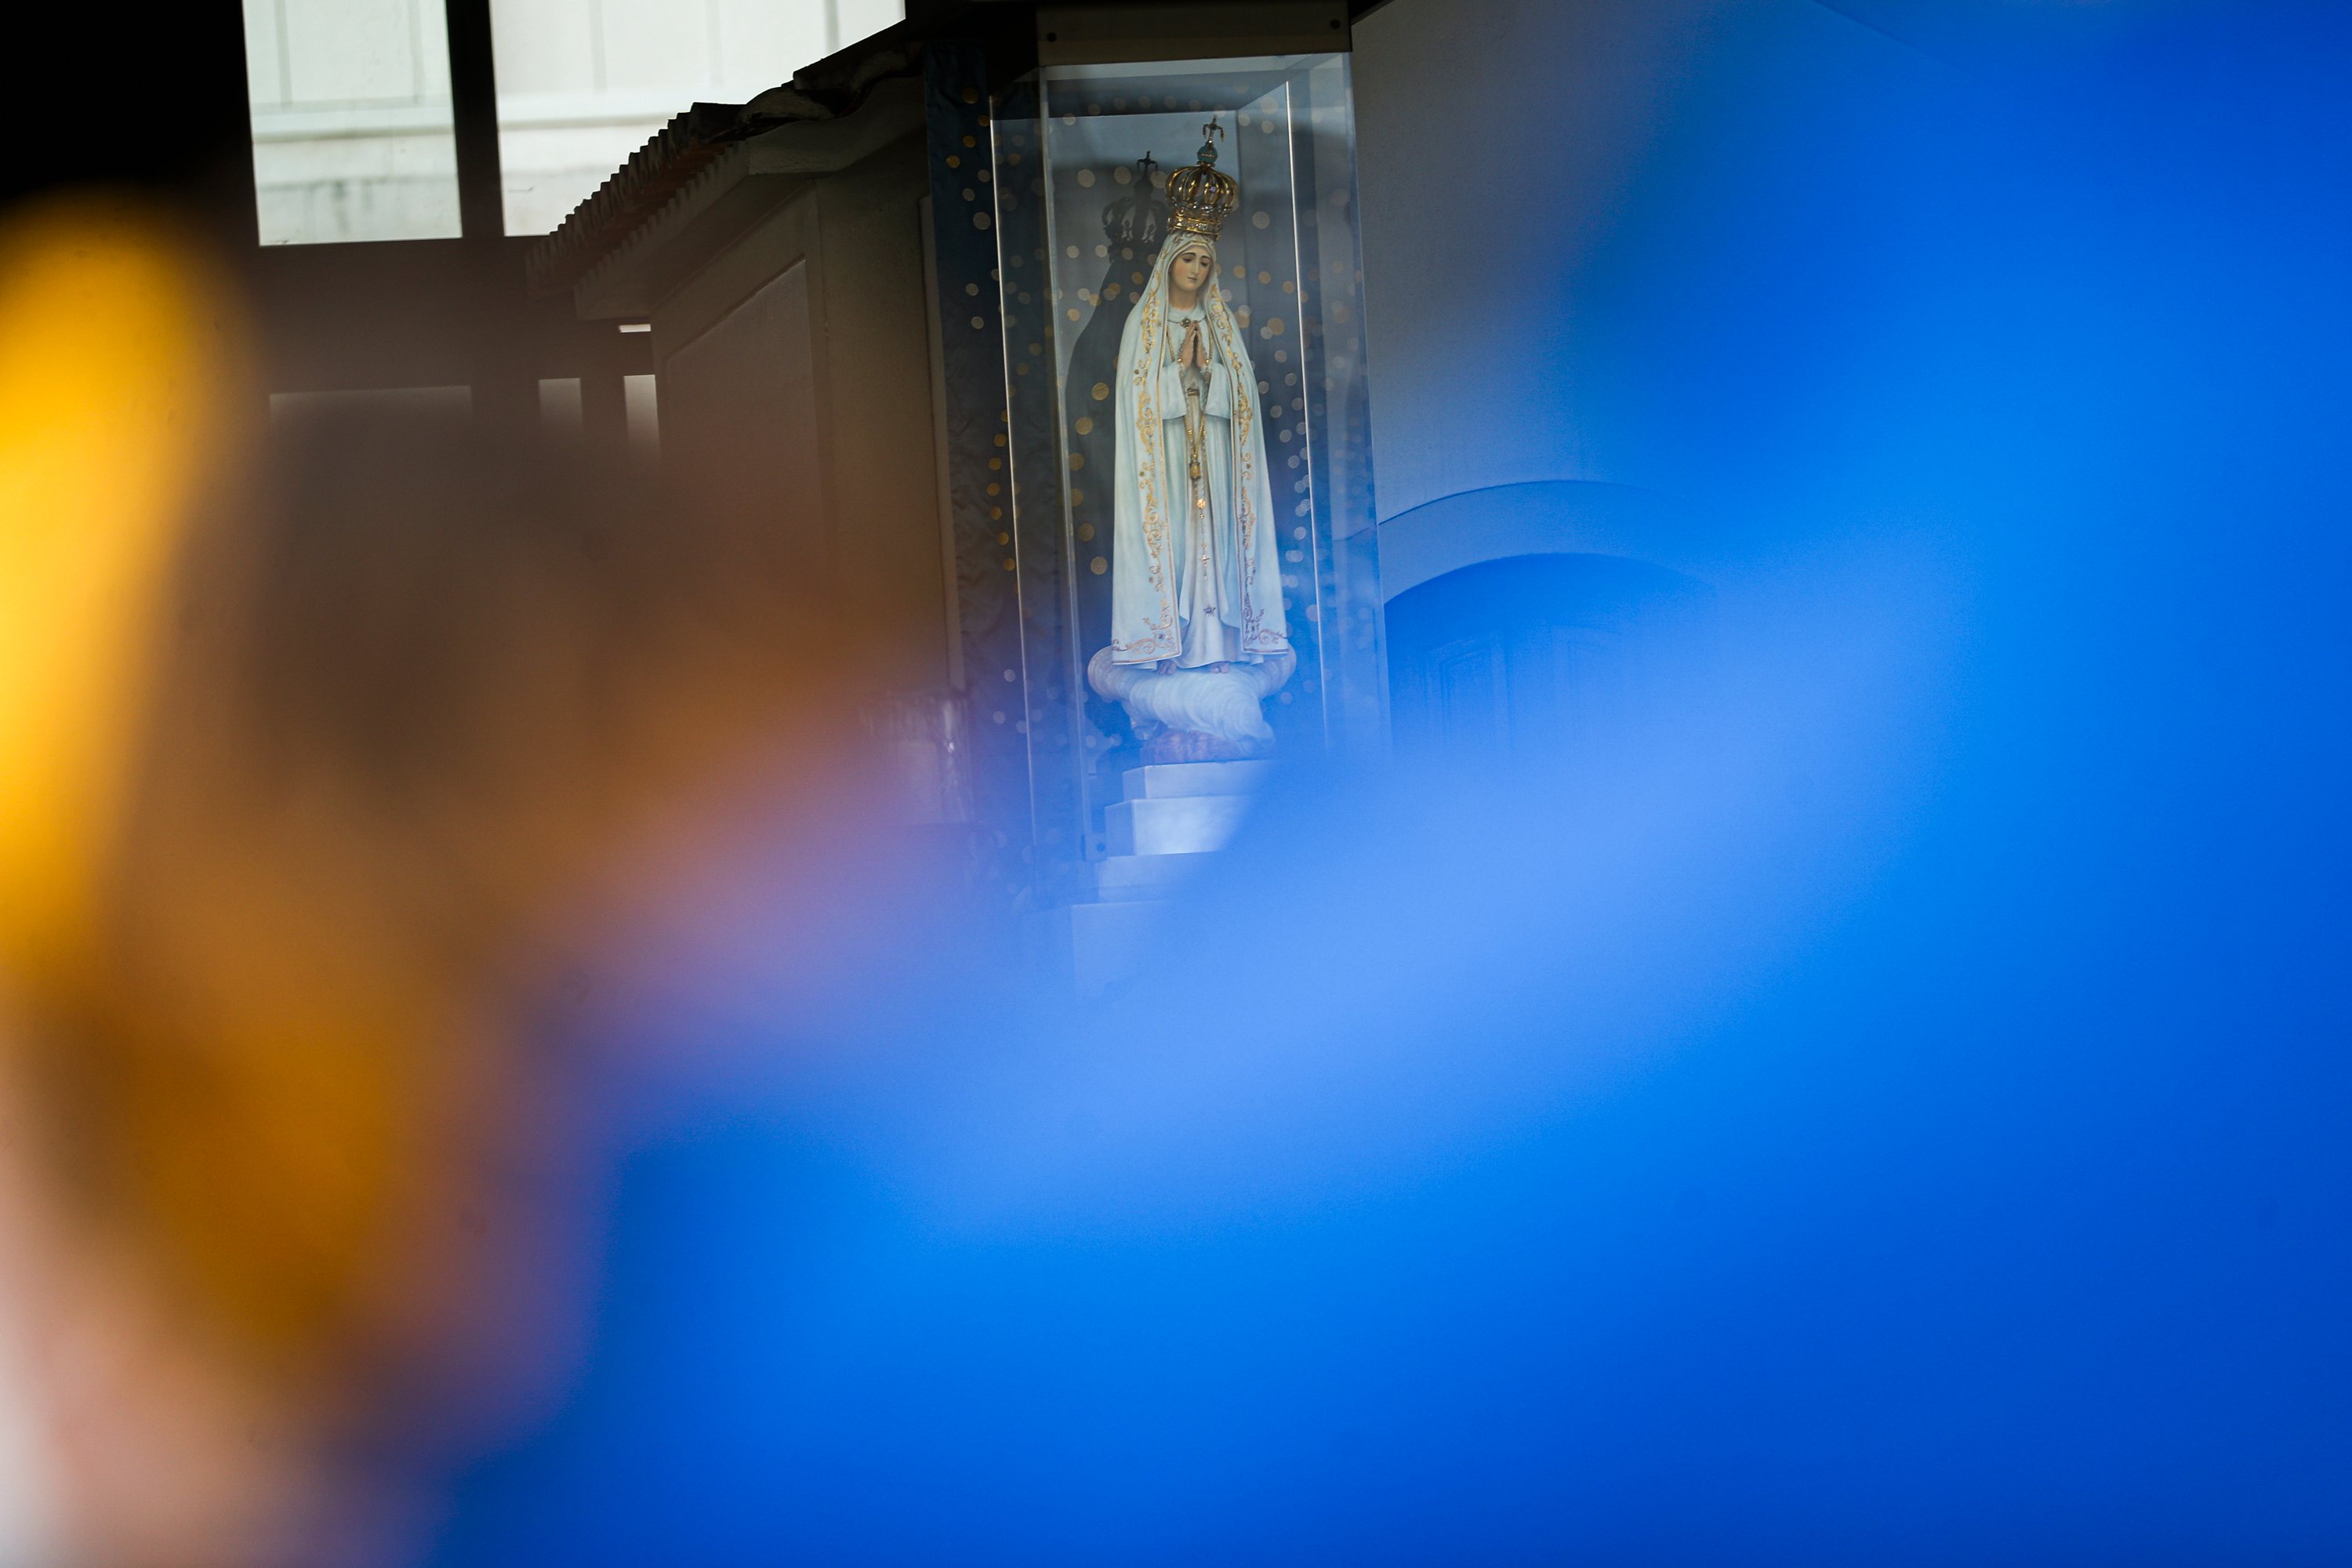 O Papa Francisco fez da a consagração da Rússia e da Ucrânia ao Imaculado Coração de Maria durante a Celebração da Penitência, que presidirá na Basílica de São Pedro, na Cidade do Vaticano. Em Fátima, na condição de Legado Pontifício, está o cardeal Konrad Krajewski, esmoleiro apostólico, que faz o ato de consagração na Capelinha das Aparições. Fátima, 25 de Março de 2022. FILIPE AMORIM/OBSERVADOR